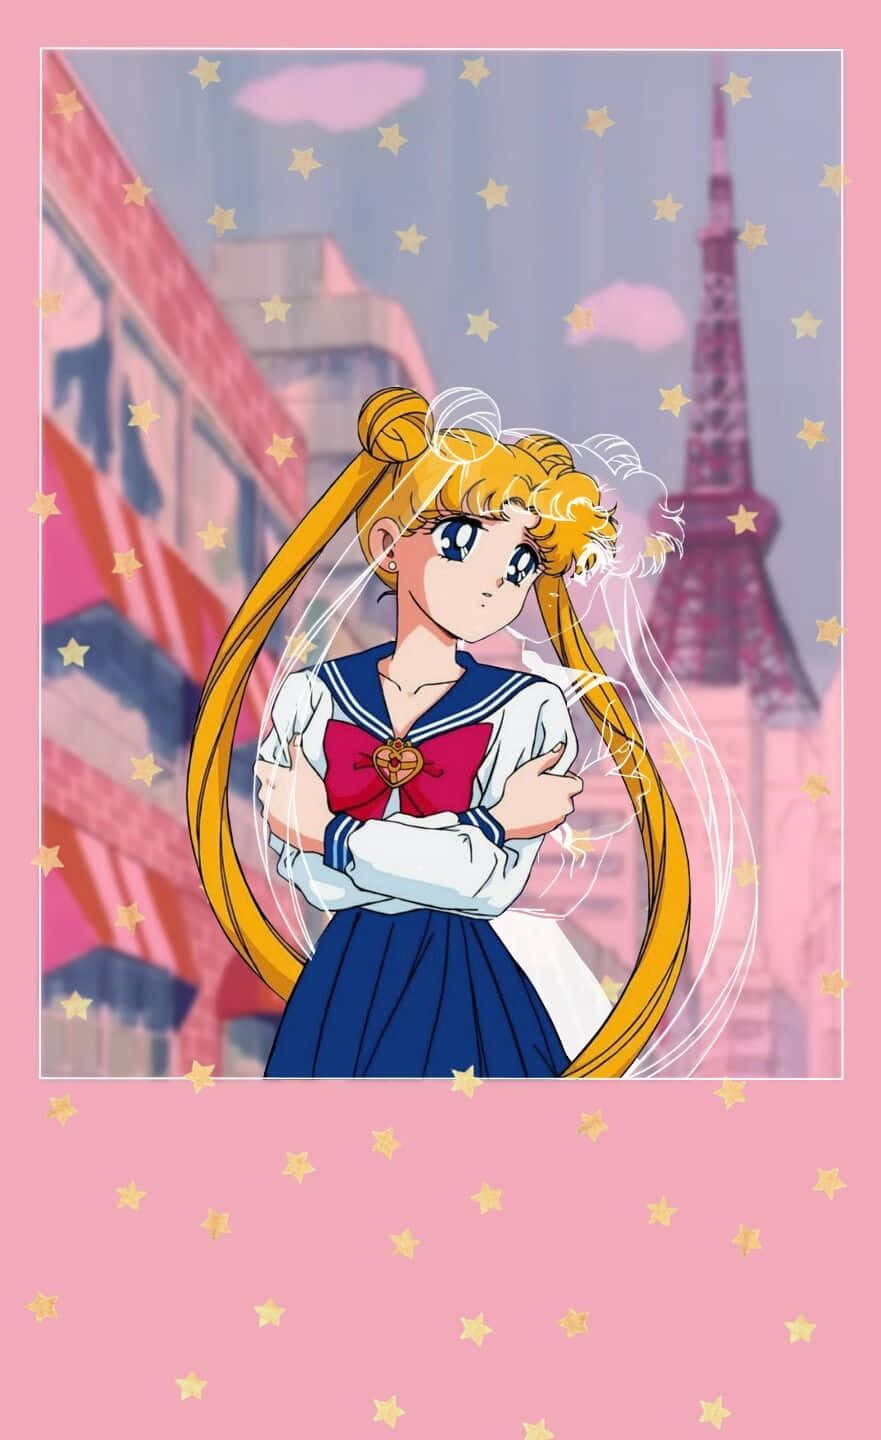 Sfondodi Sailor Moon - Sfondo Di Sailor Moon Sfondo